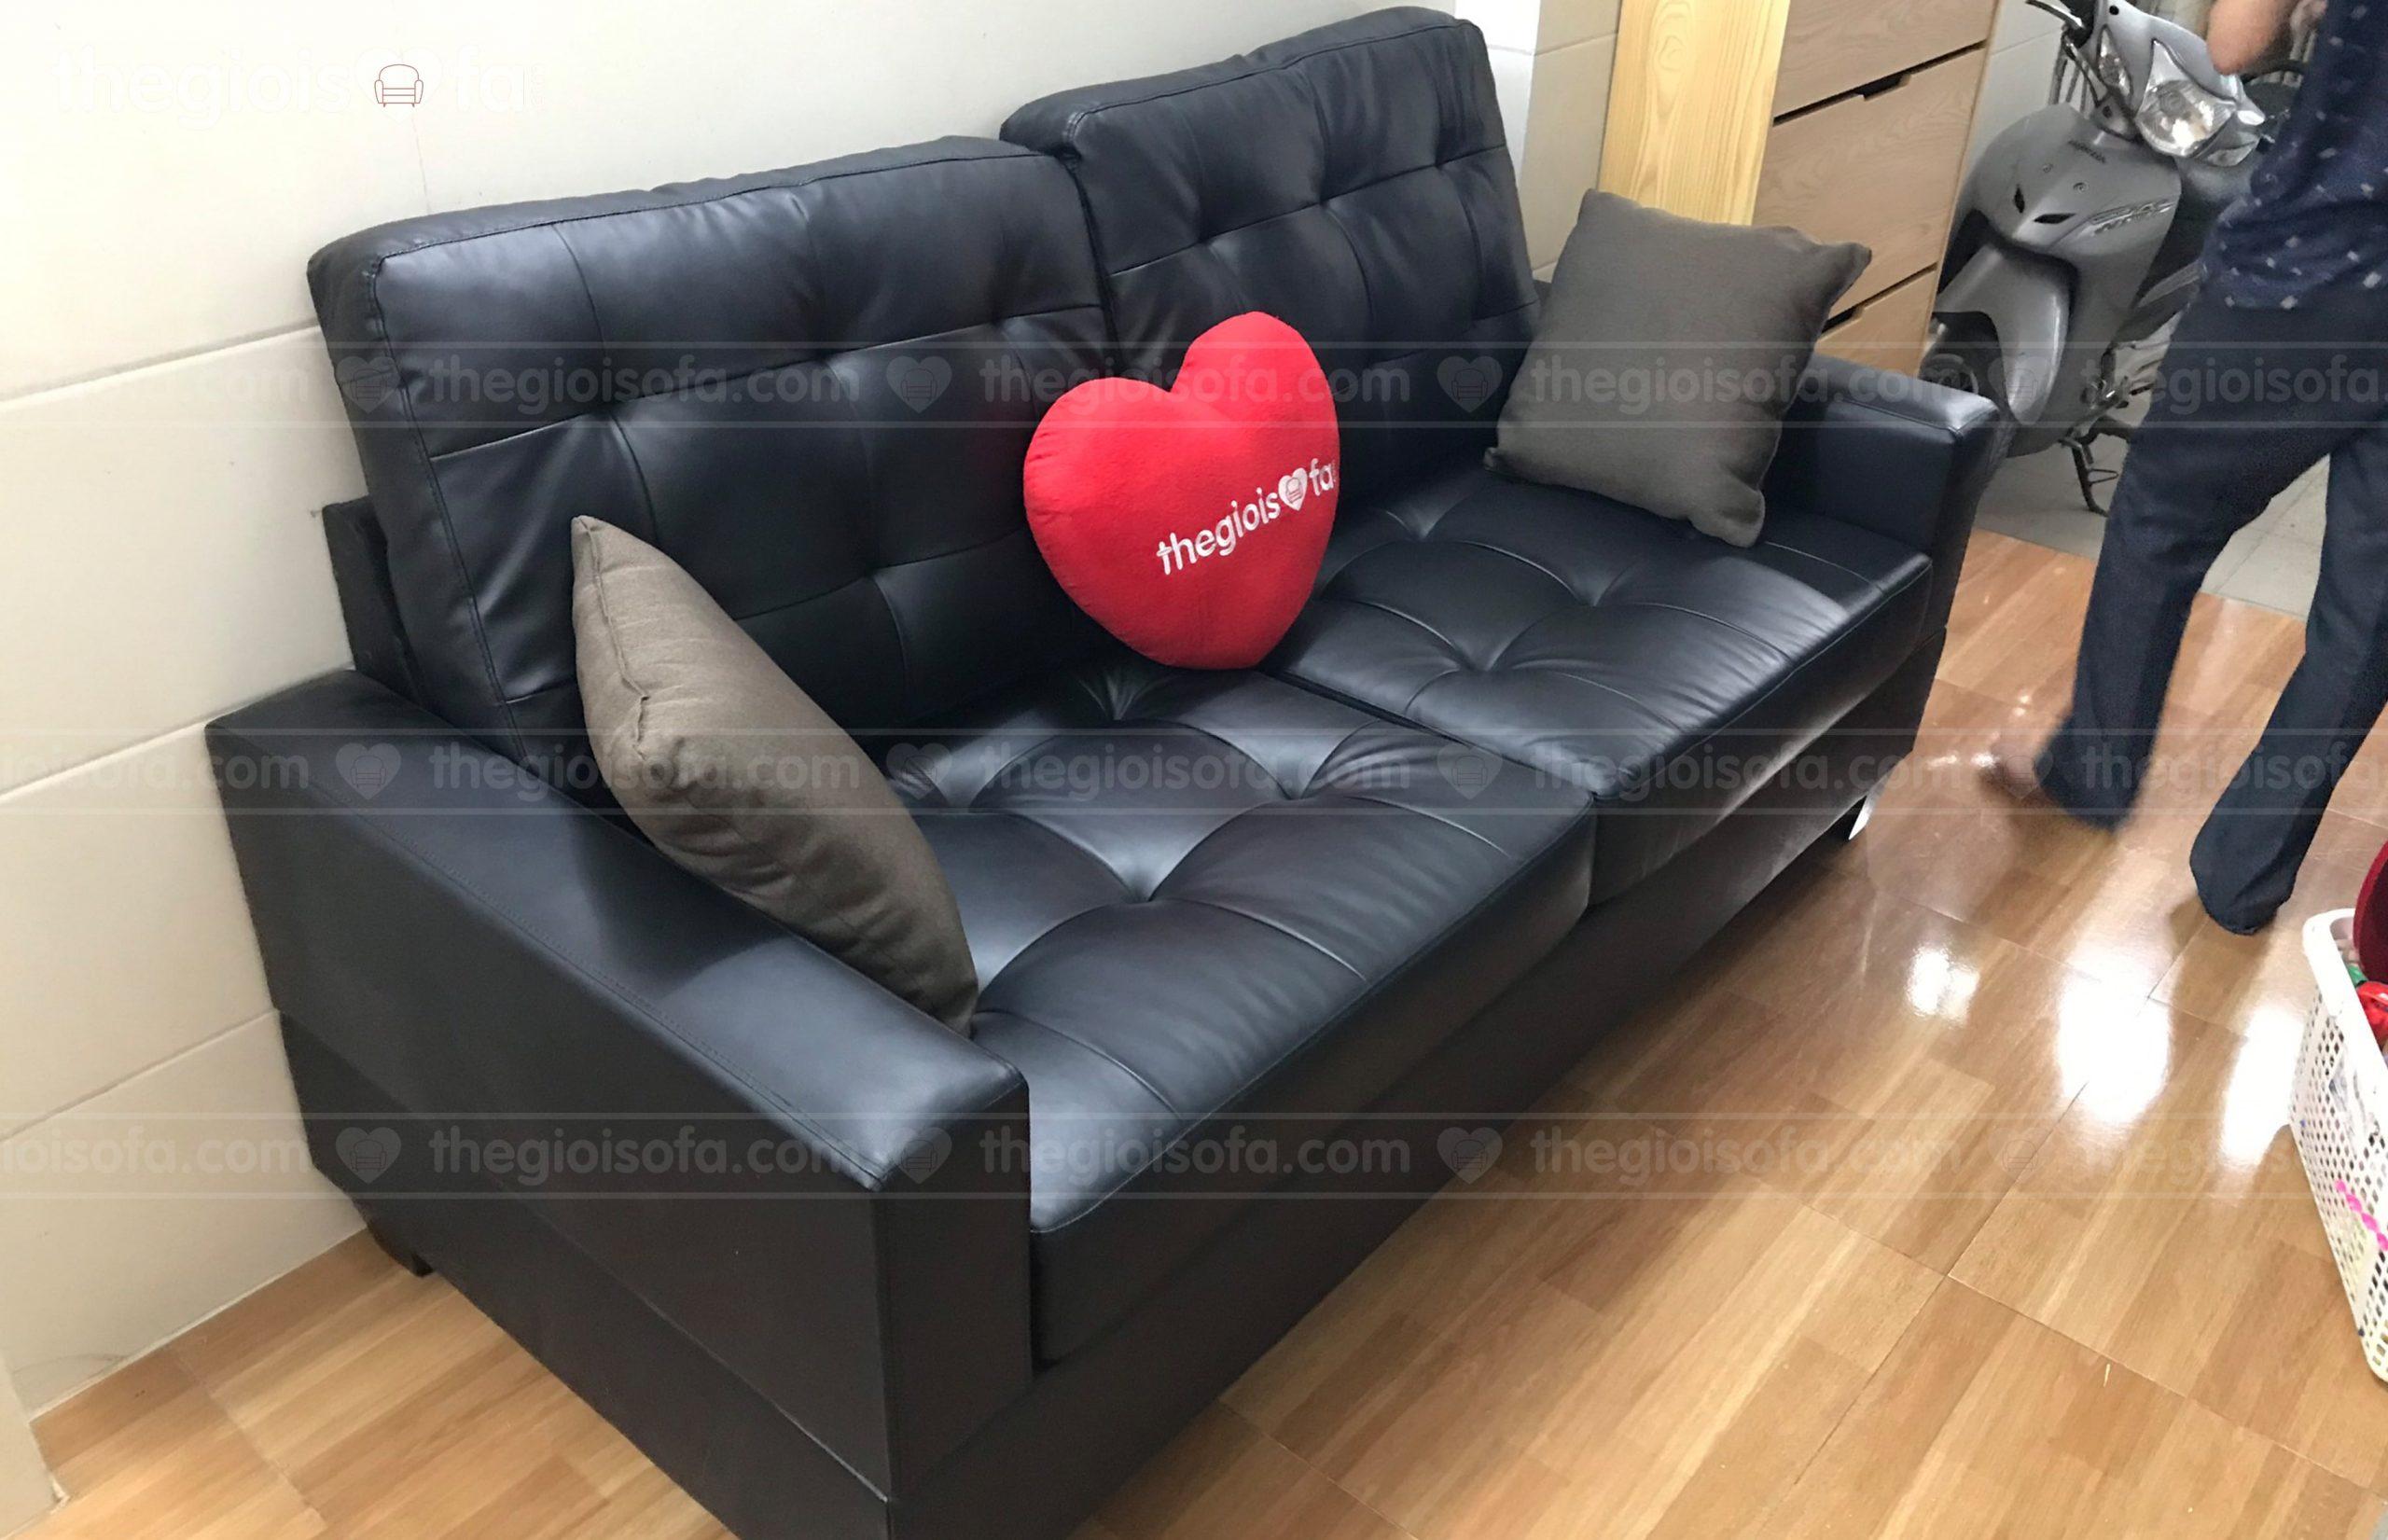 Giao hàng bộ sofa băng da PU Sofaland Vista cho anh Luân tại 230 Định Công Thượng – Mua sofa Quận Hoàng Mai